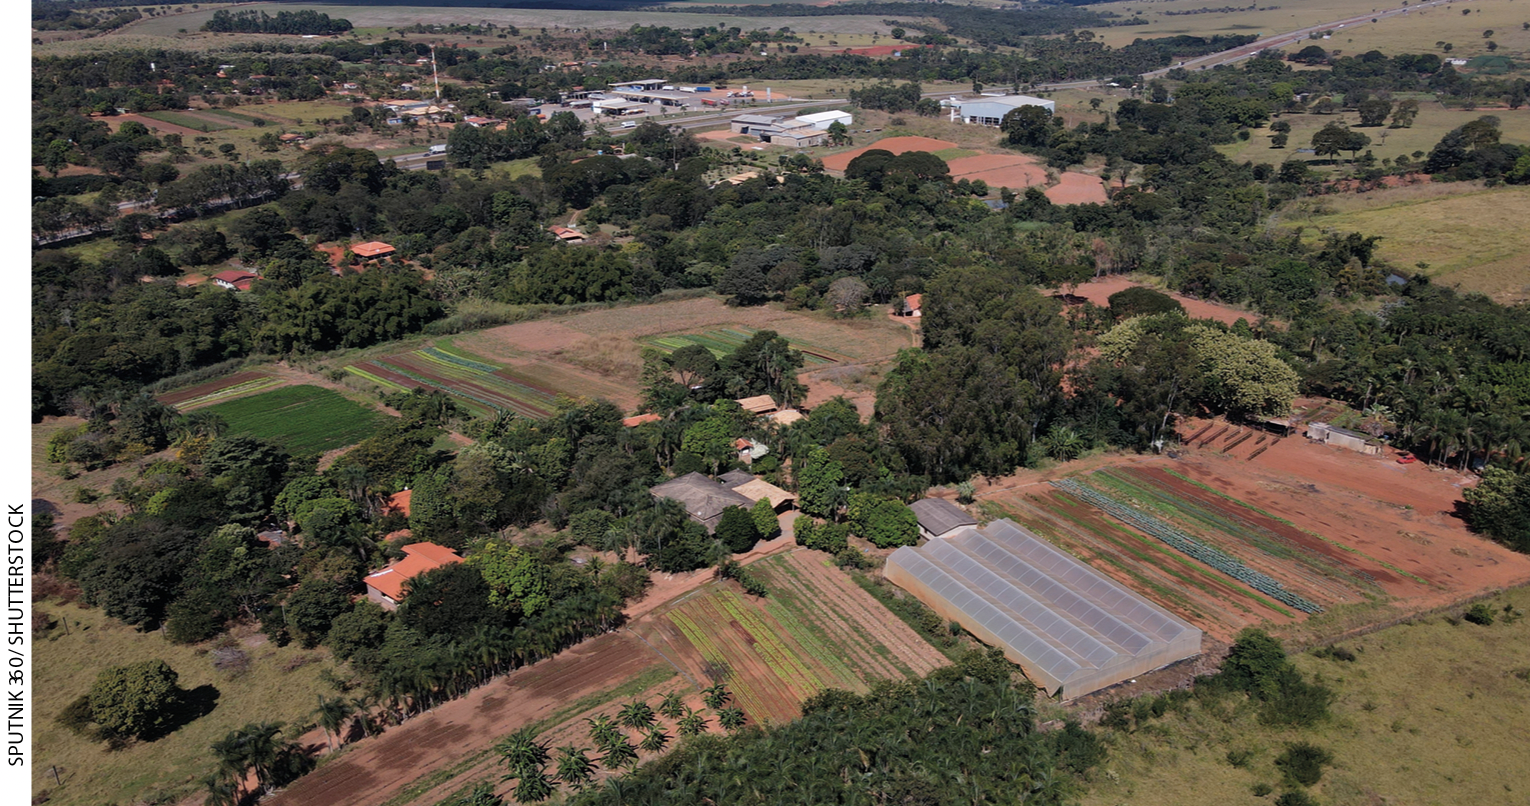 IMAGEM: imagem aérea de uma extensa área com vegetação, diversas porções com cultivos e solo exposto. FIM DA IMAGEM.